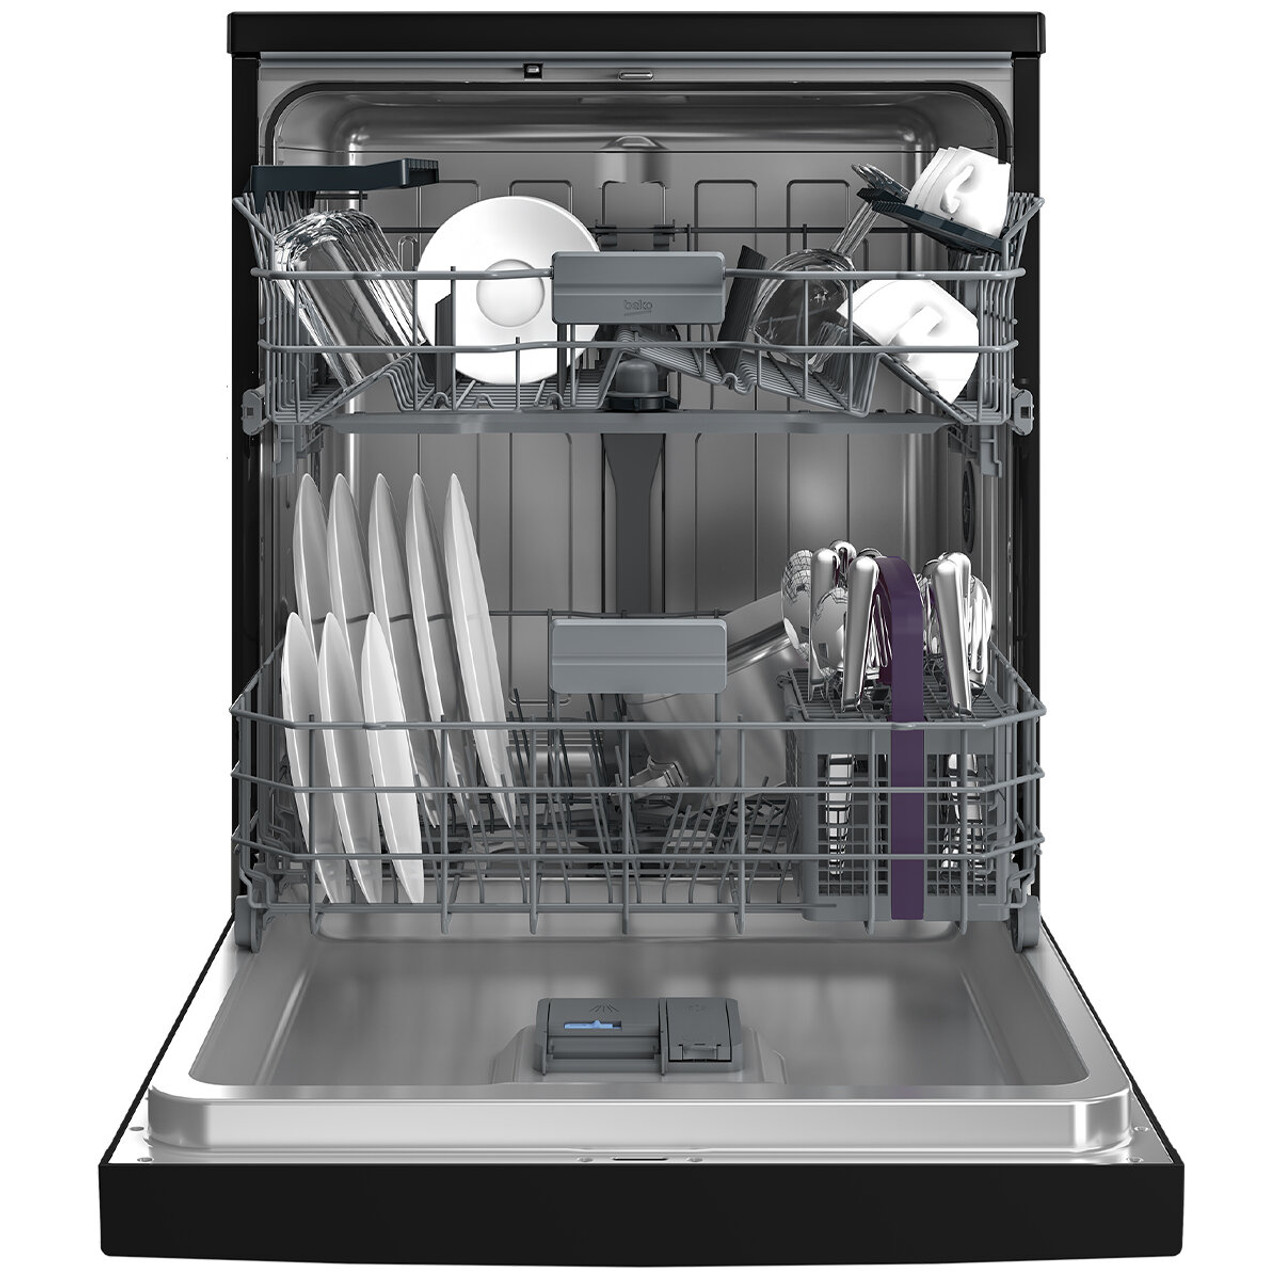 BDFB1430B - Freestanding Dishwasher 14 Place - Black